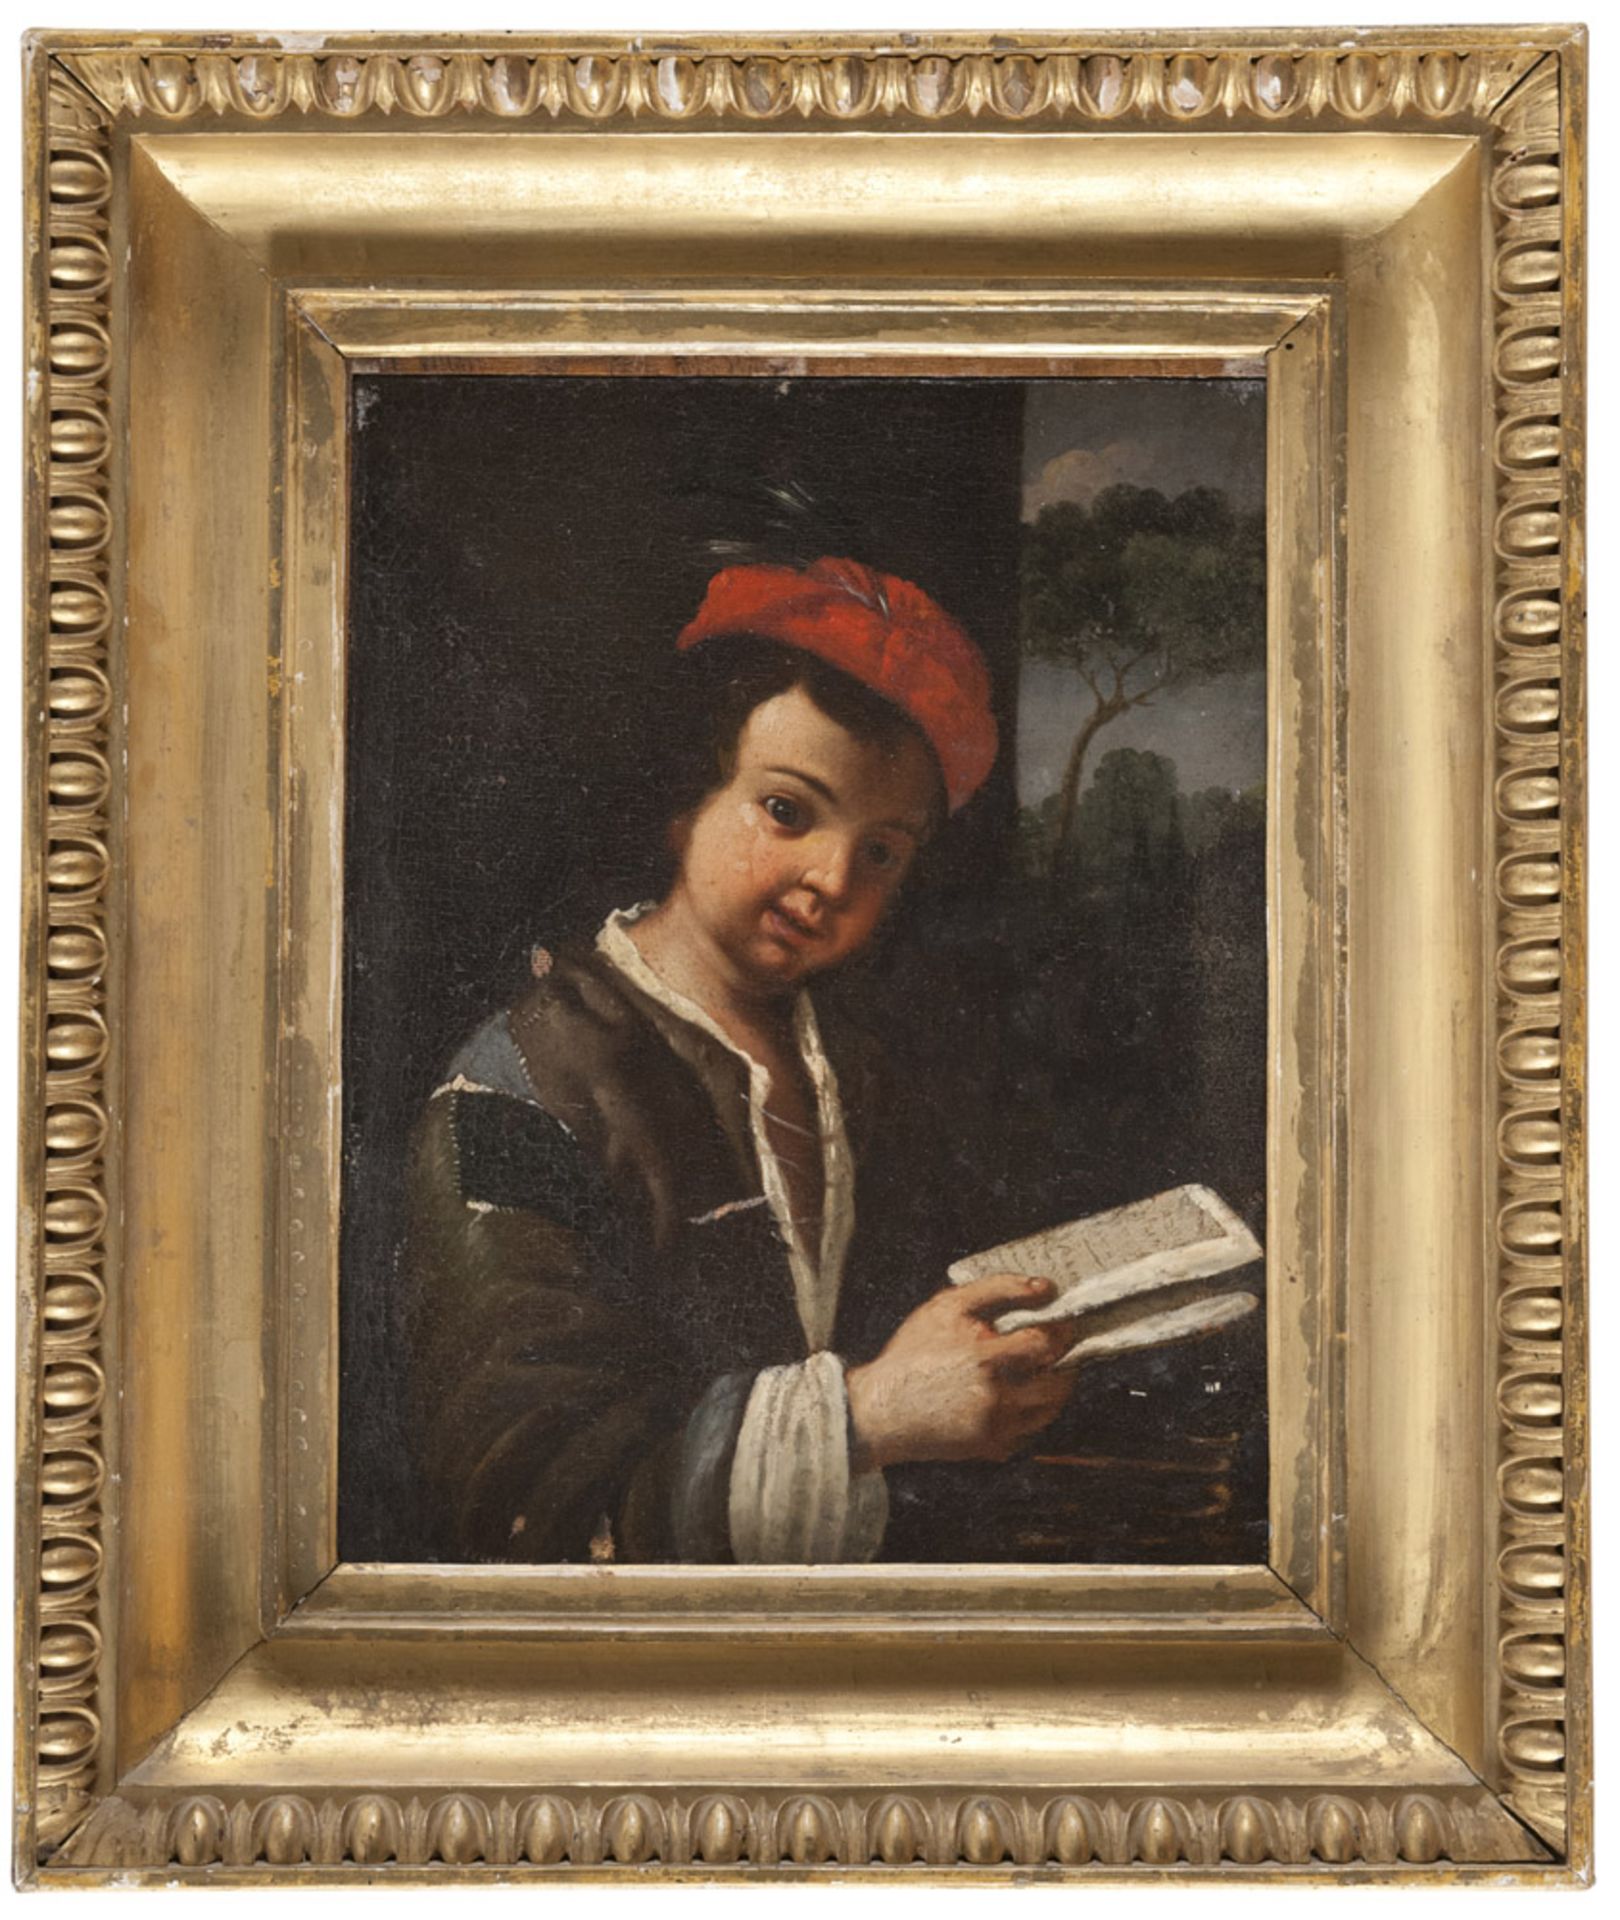 Antonio Mercurio Amorosi (Comunanza 1660 - Rome 1738). Little boy with primer. Oil on canvas, cm. 39